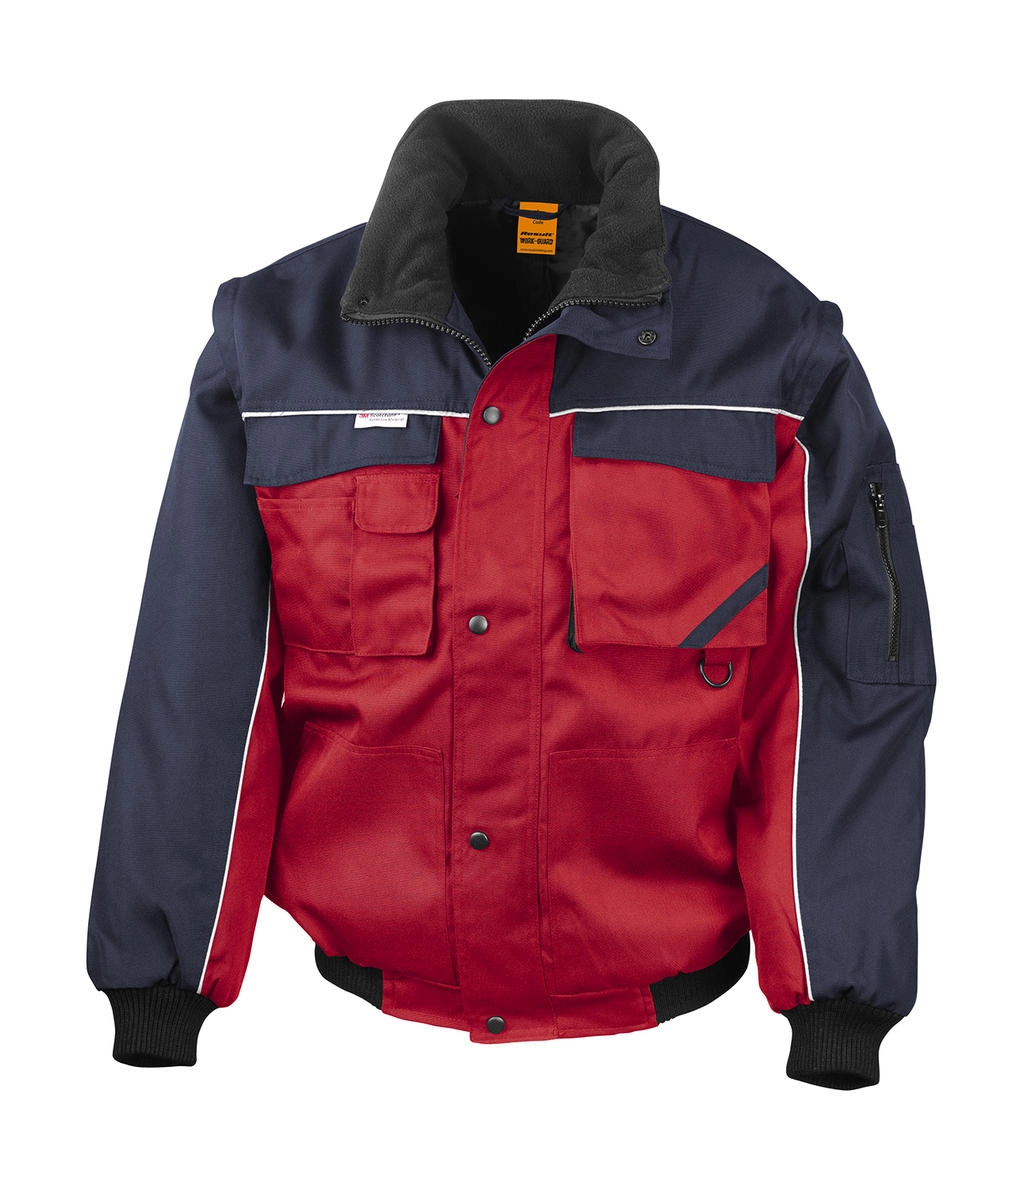 Heavy Duty Jacket zum Besticken und Bedrucken in der Farbe Red/Navy mit Ihren Logo, Schriftzug oder Motiv.